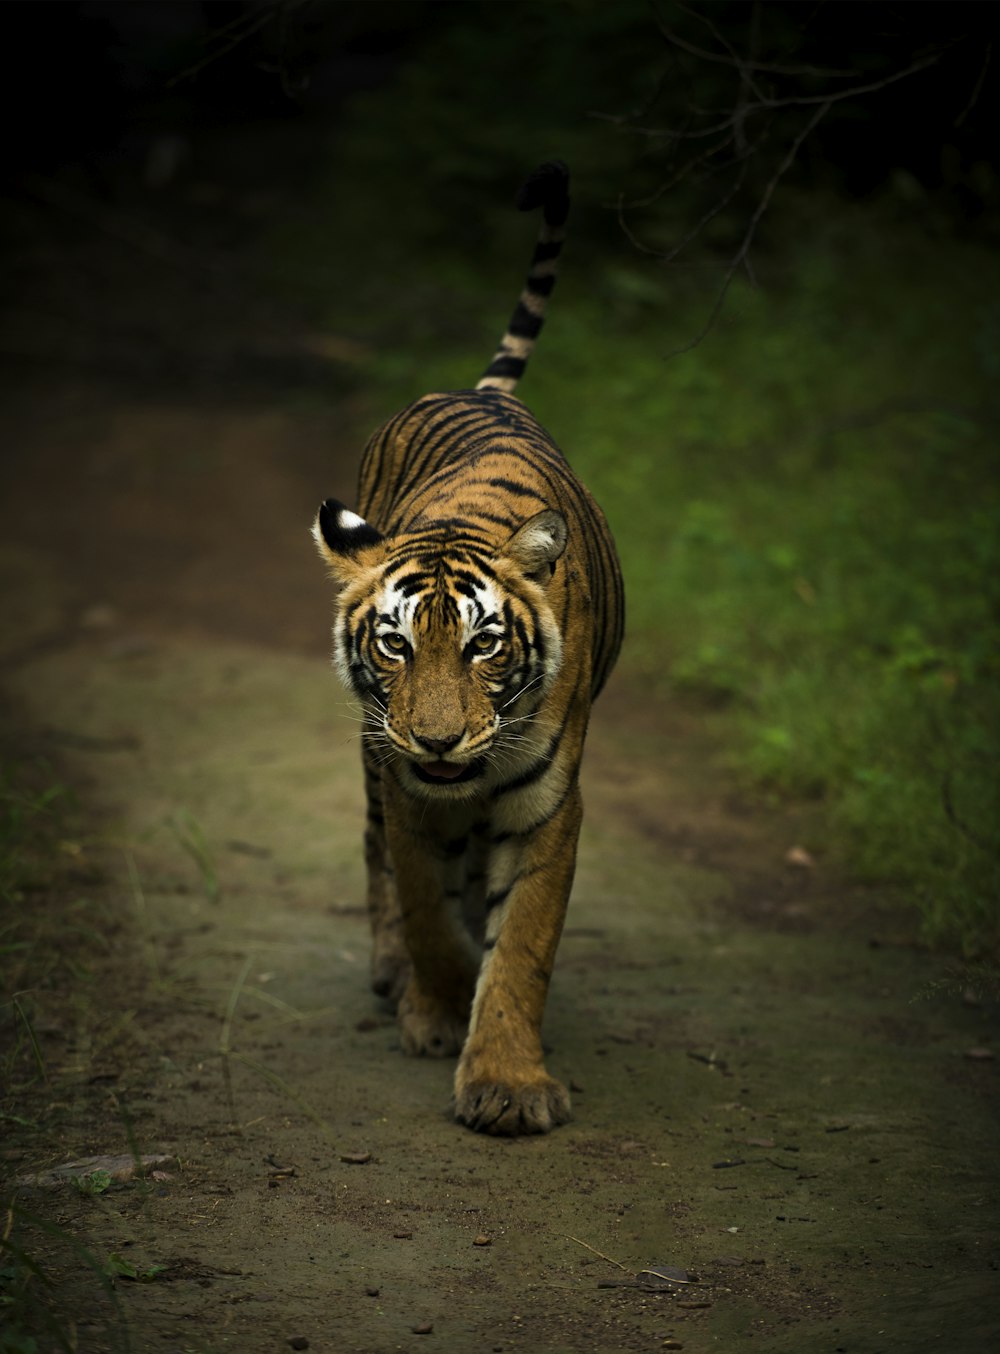 Tigre marrón y negro caminando sobre suelo marrón